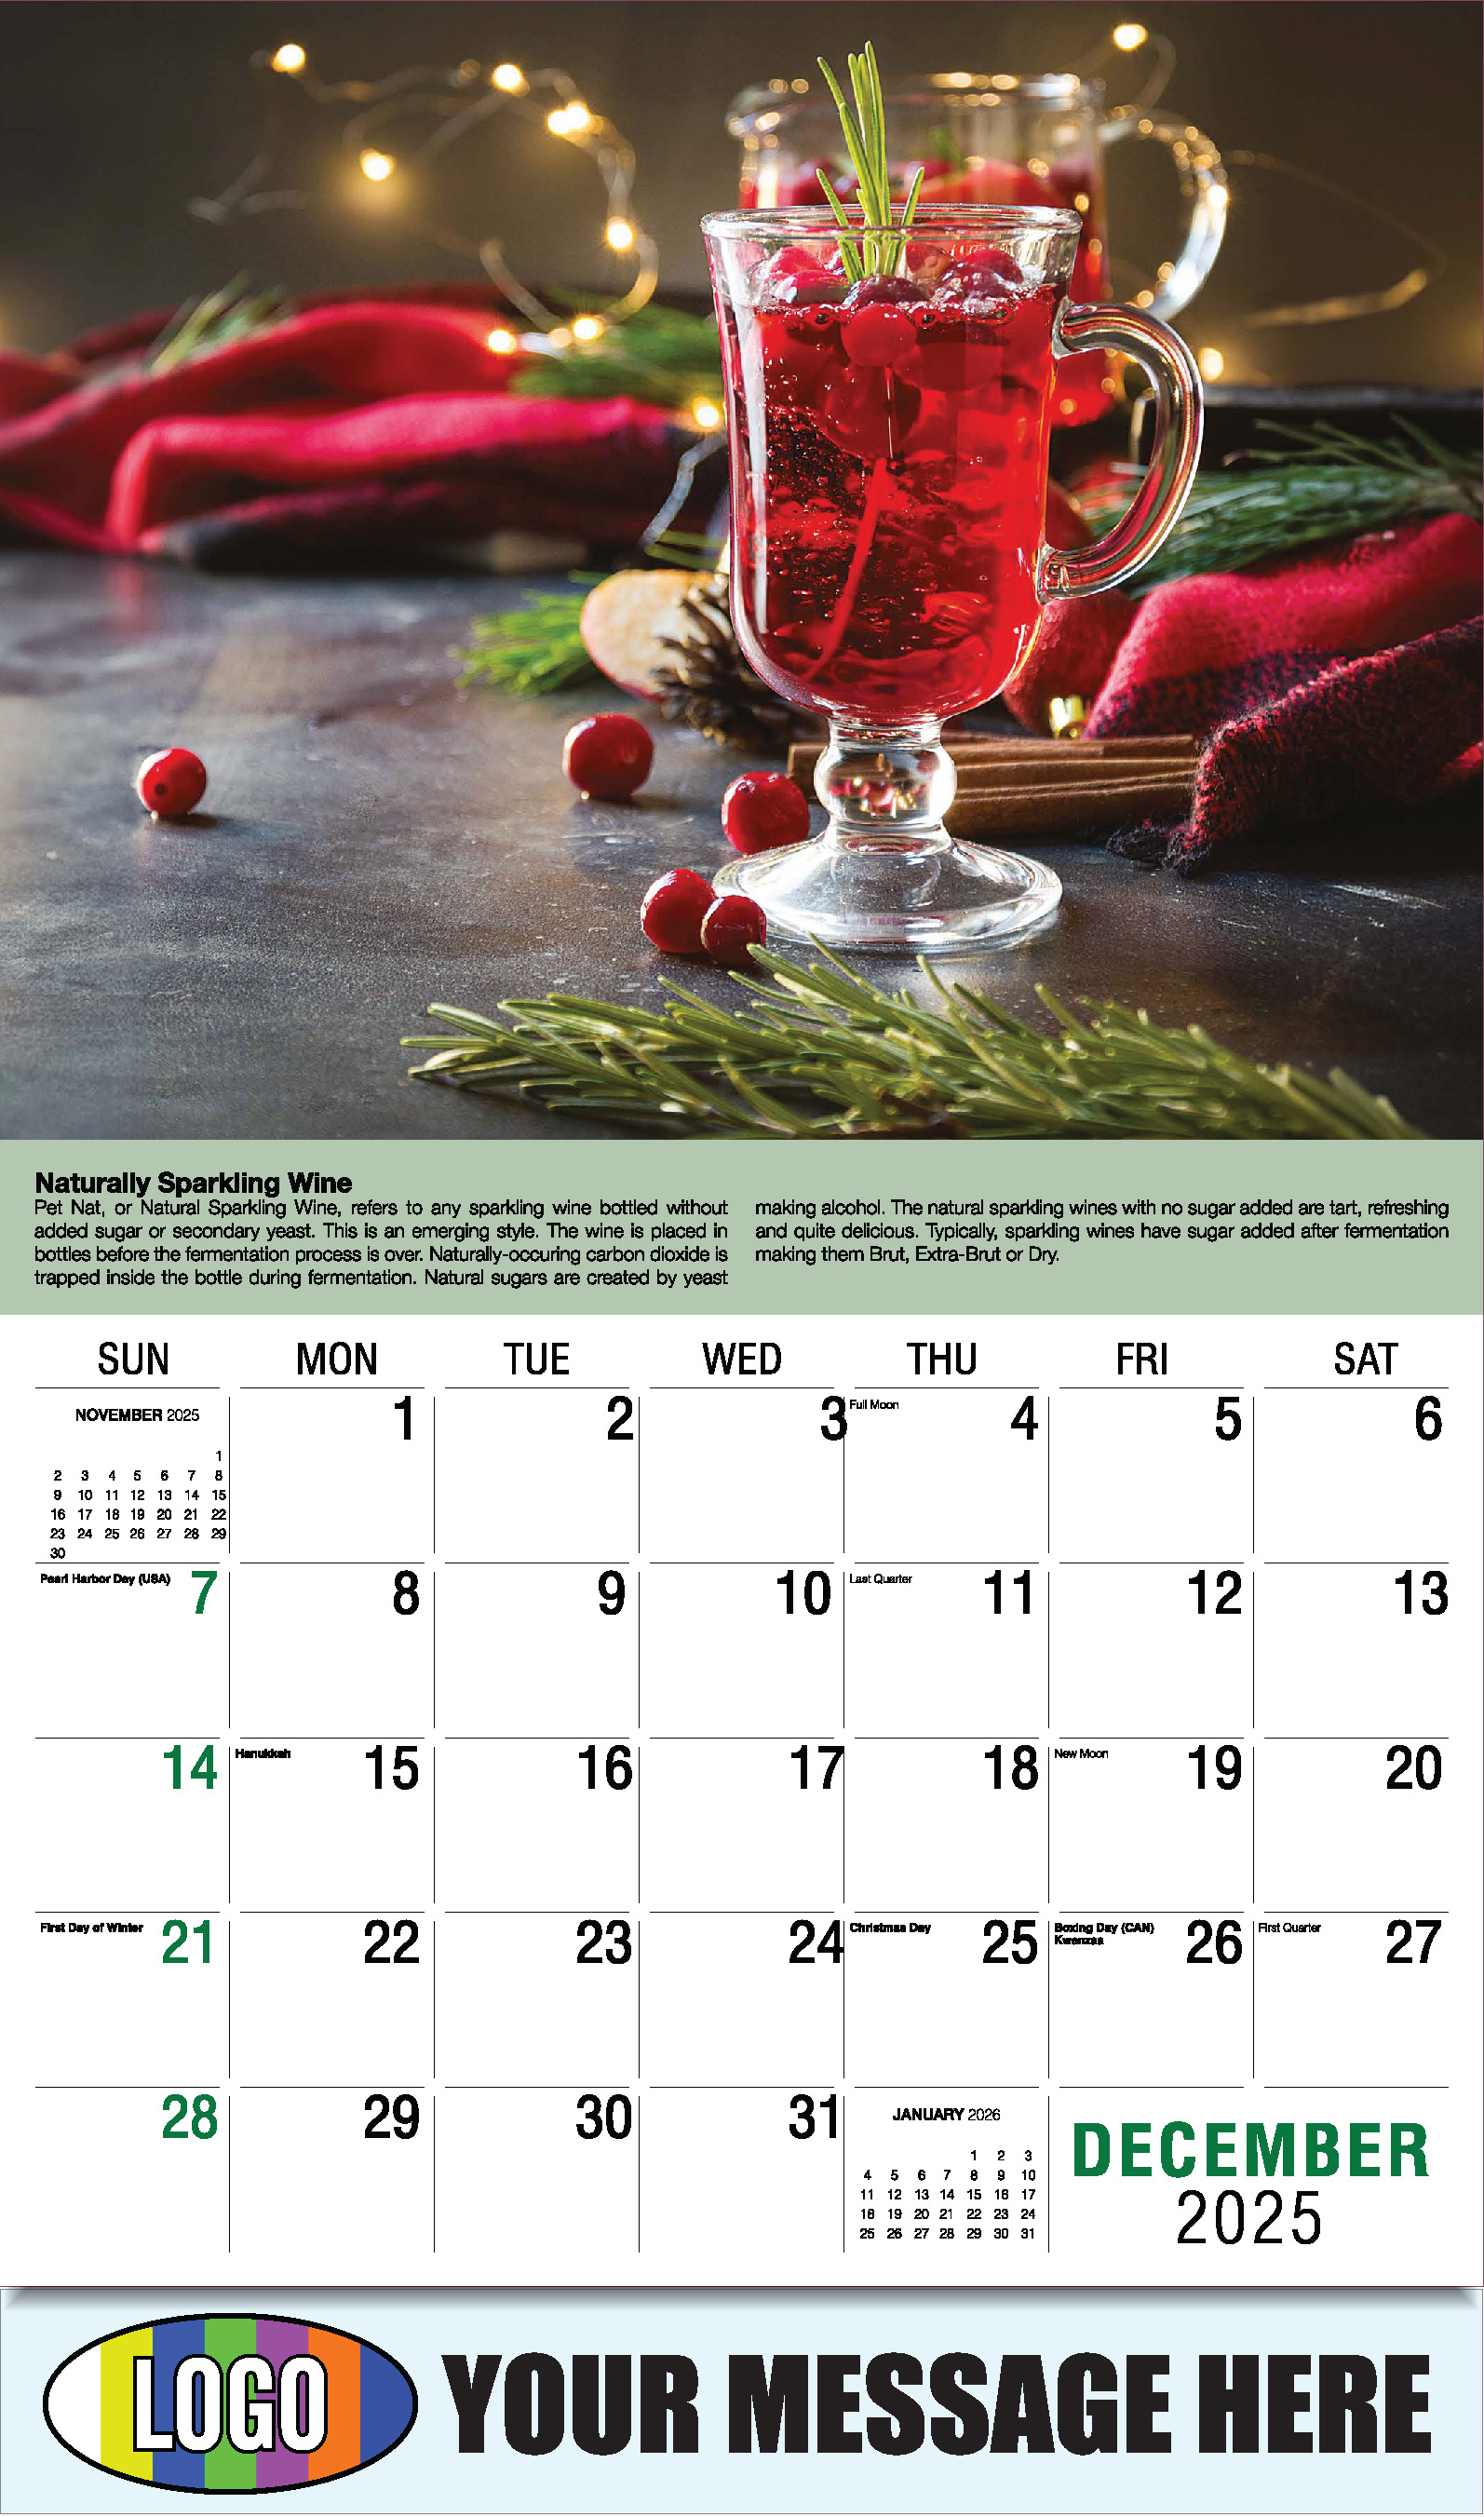 Vintages - Wine Tips 2025 Business Promo Calendar - December